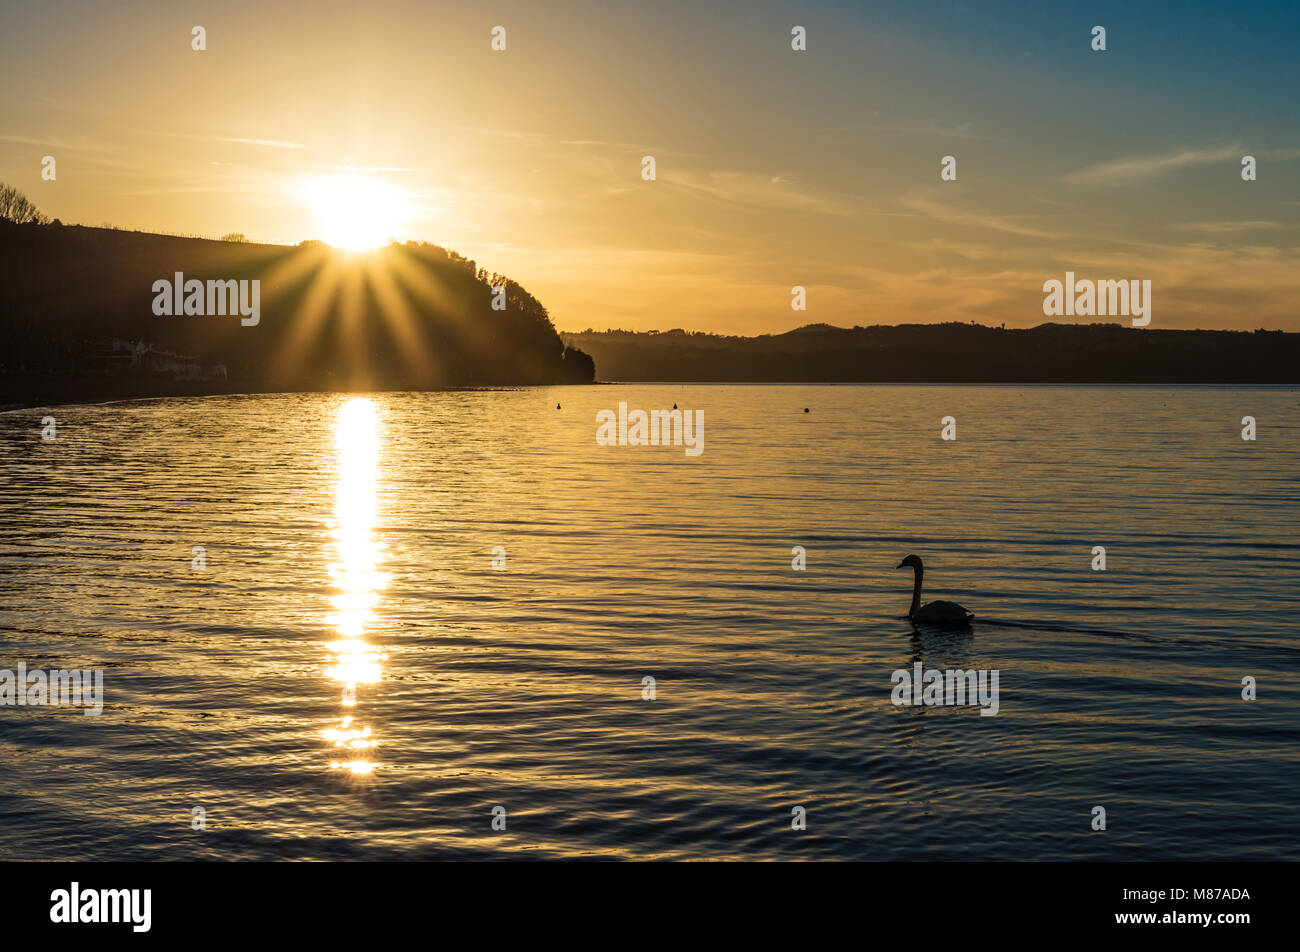 Carpi, Italie - Le lac de Bracciano, au coucher du soleil de la vieille ville de pierre sur le bord de l'eau. Province de Rome, Italie centrale Banque D'Images